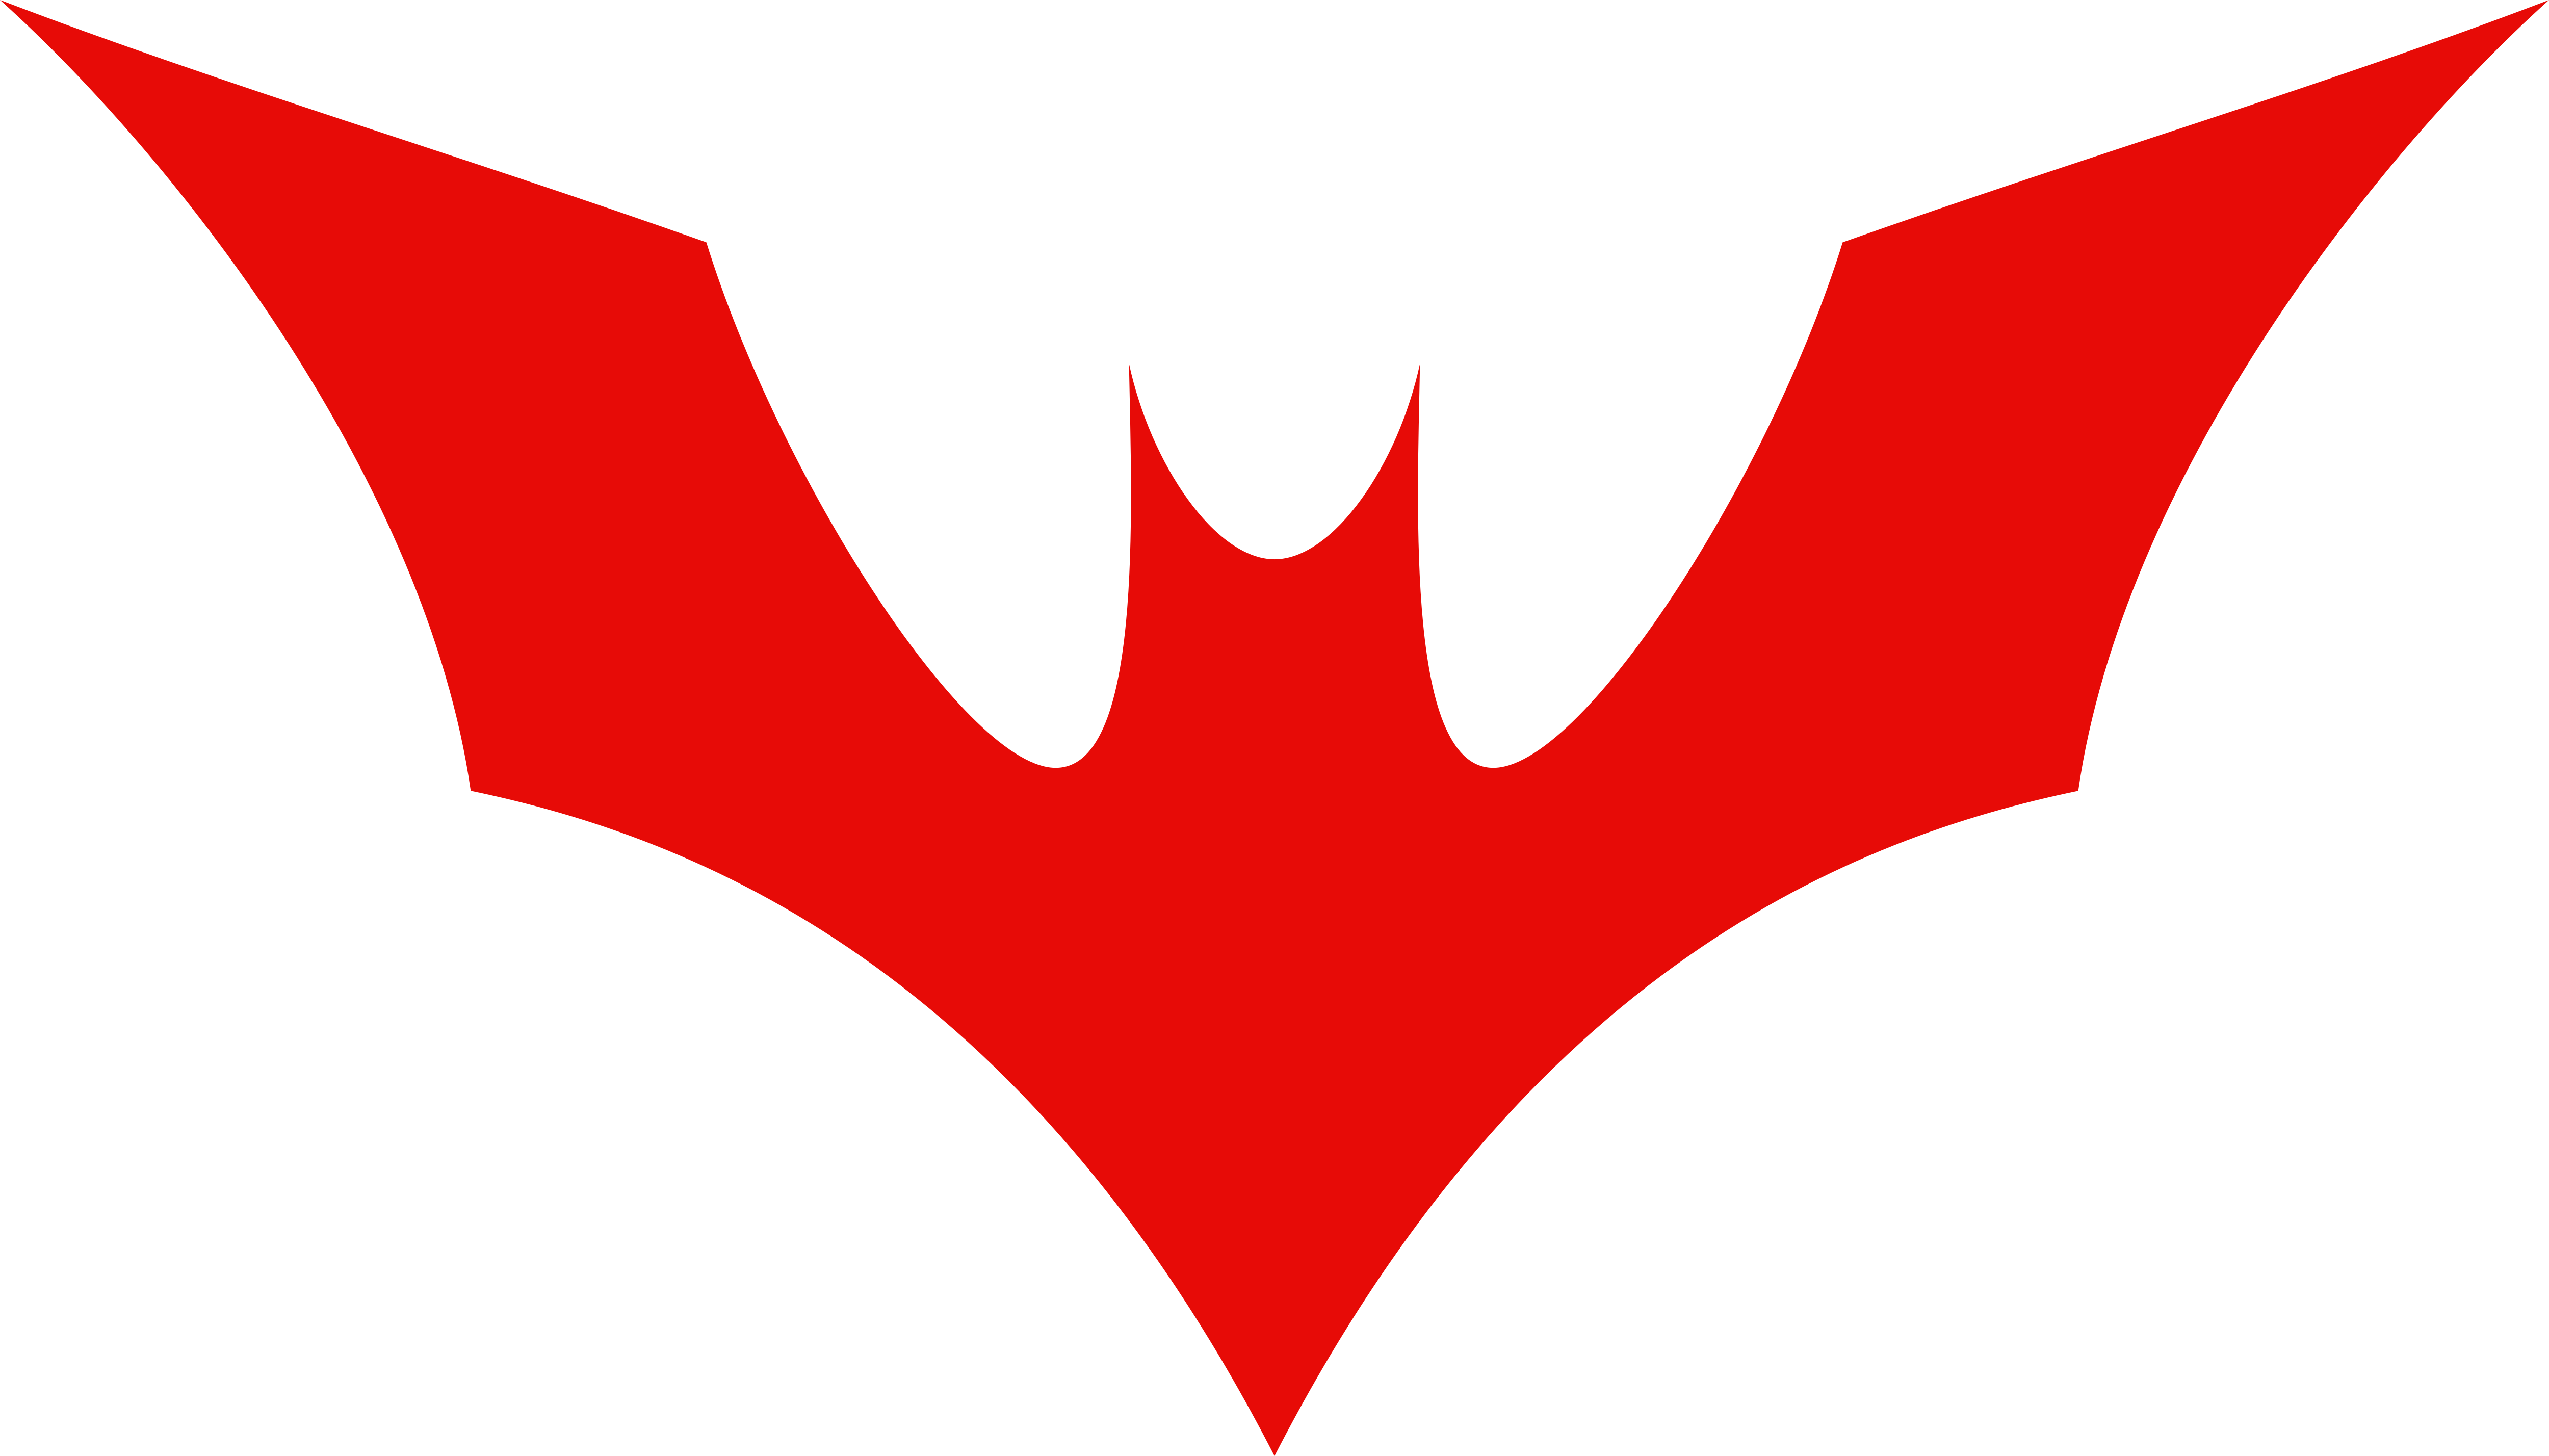 Batman Beyond Bat Symbol by DarkVoidPictures on DeviantArt